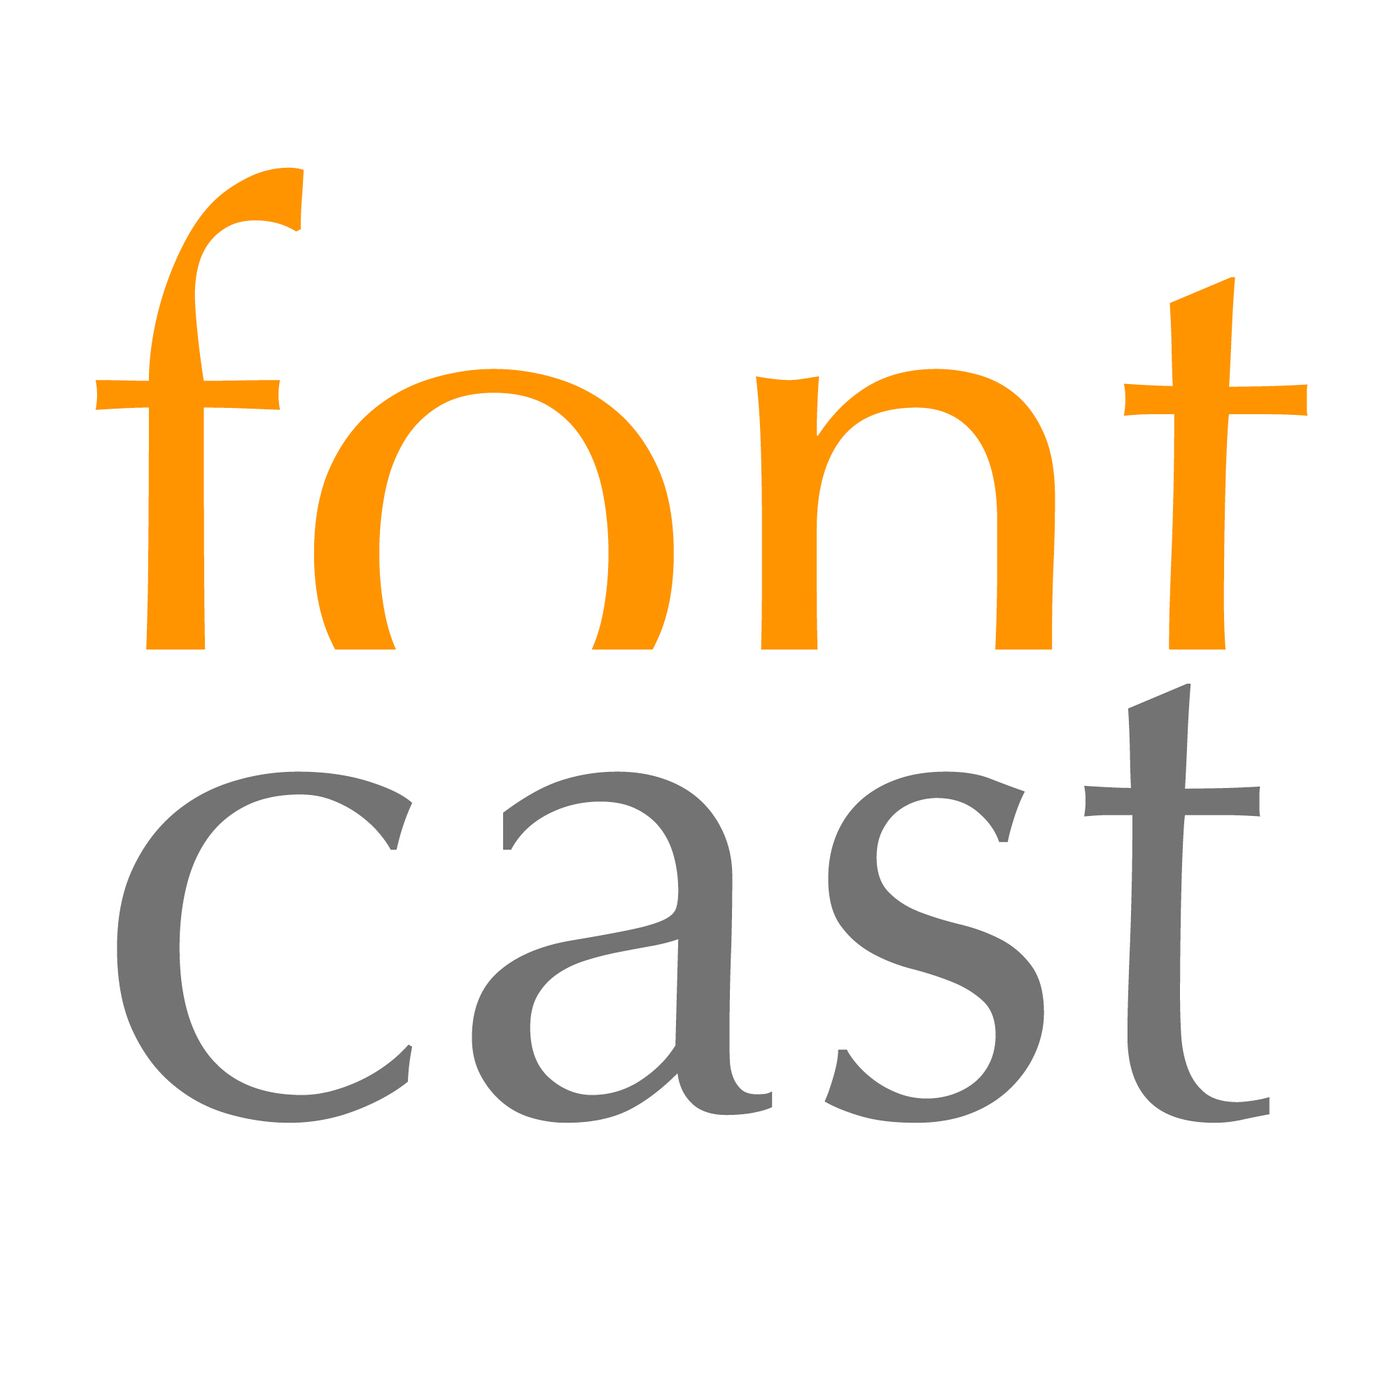 FontCast Your Vote - Episode 1